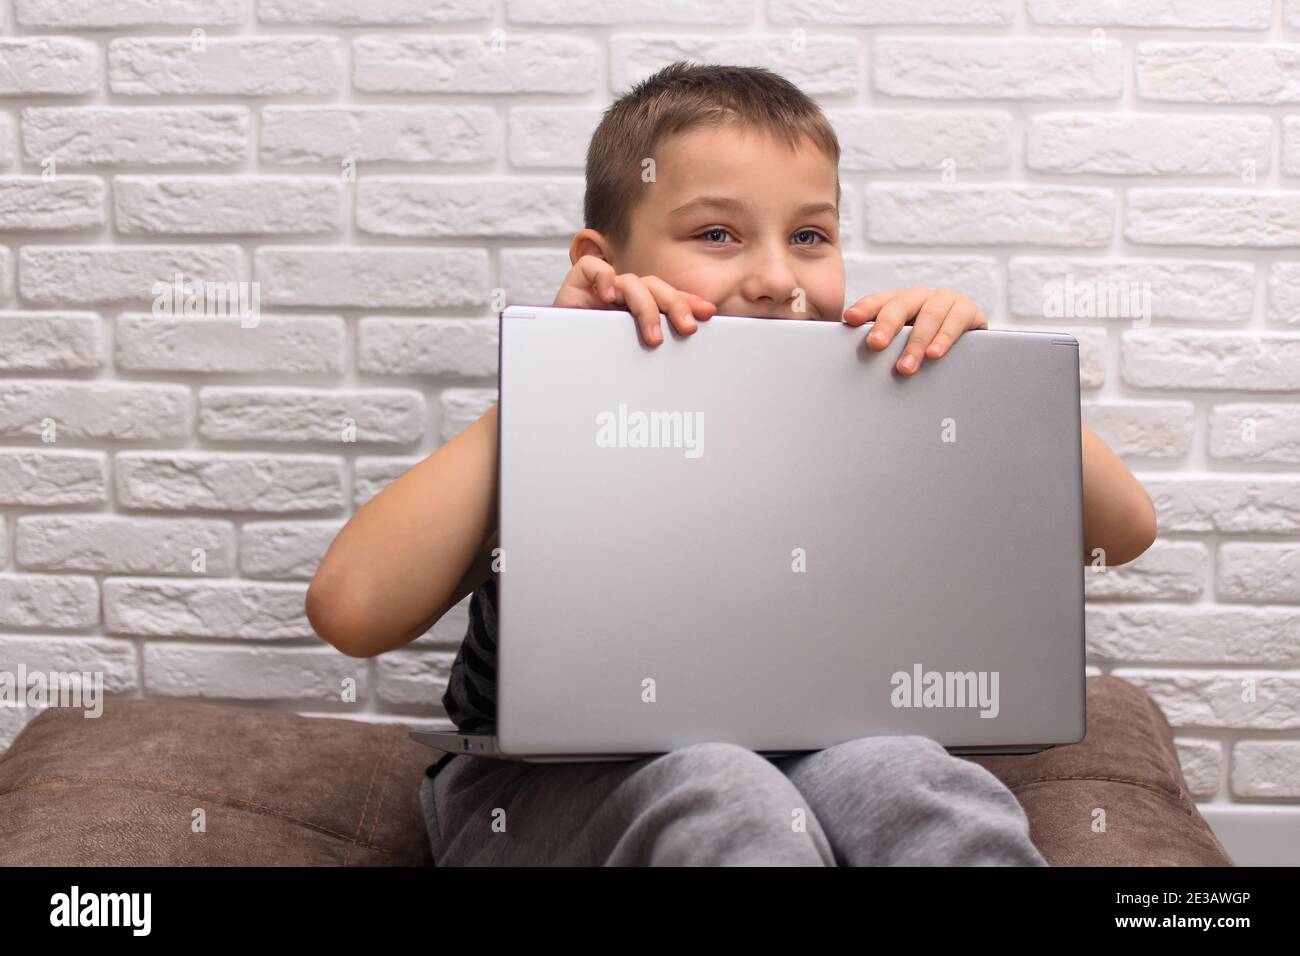 Un garçon de 6 à 7 ans est assis sur le sol avec un ordinateur portable. Contre un mur de briques. L'enfant regarde derrière l'ordinateur portable. Banque D'Images